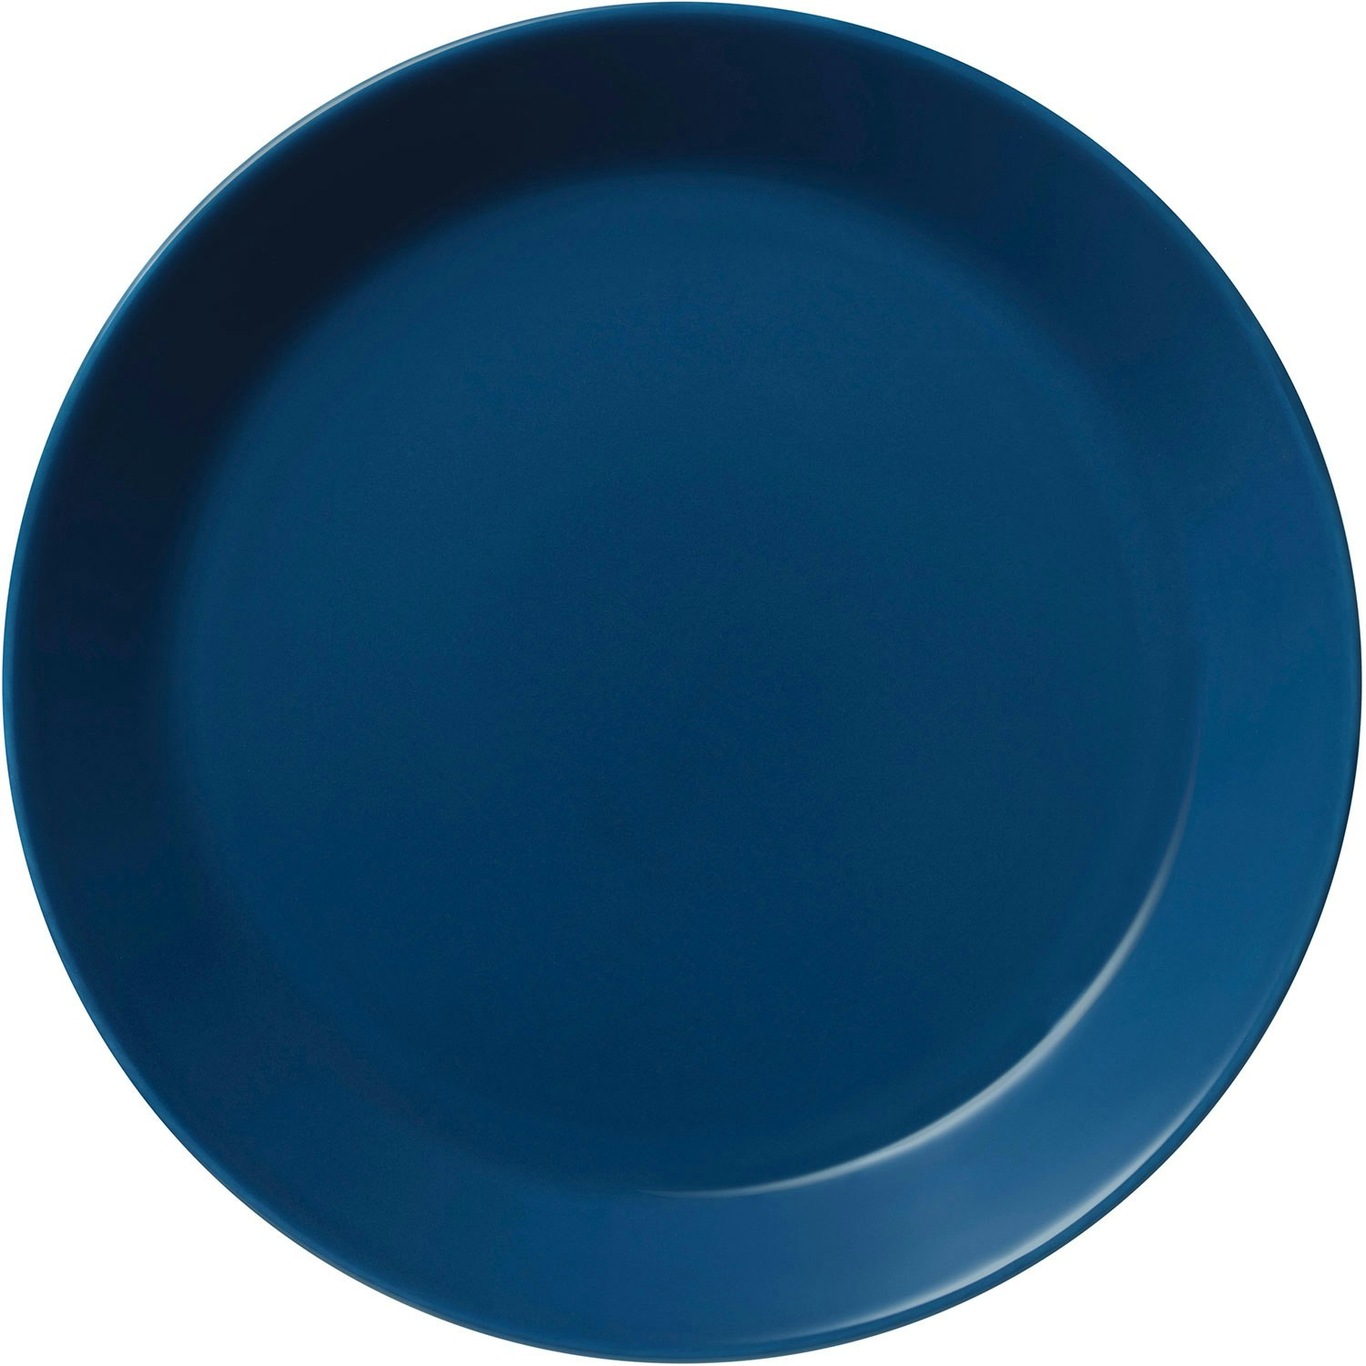 Teema Plate 23 cm, Vintage Blue